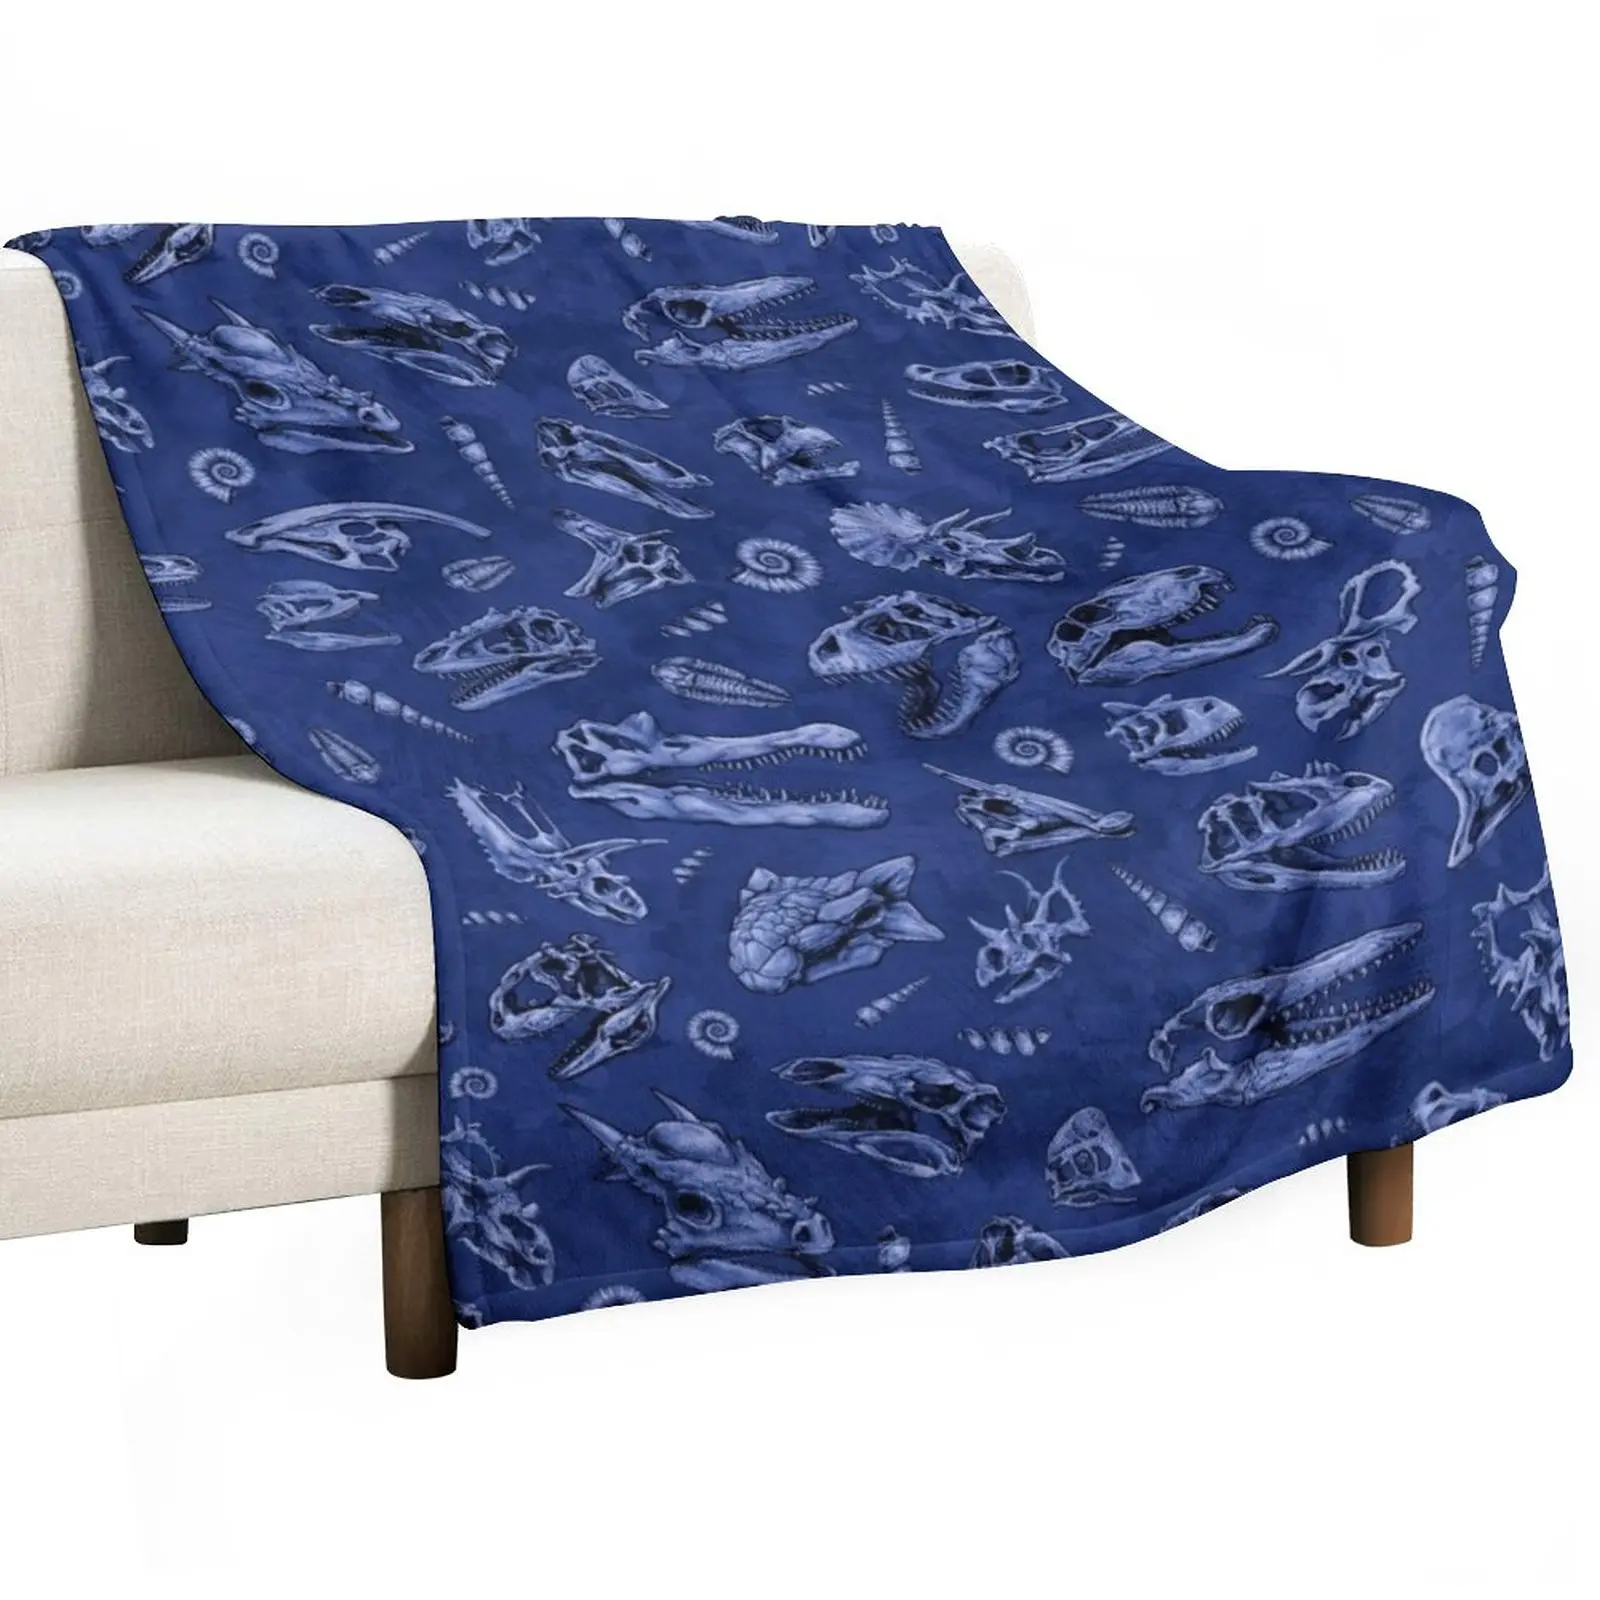 

Череп динозавра эскиз плитка узор синий плед одеяло пушистое одеяло